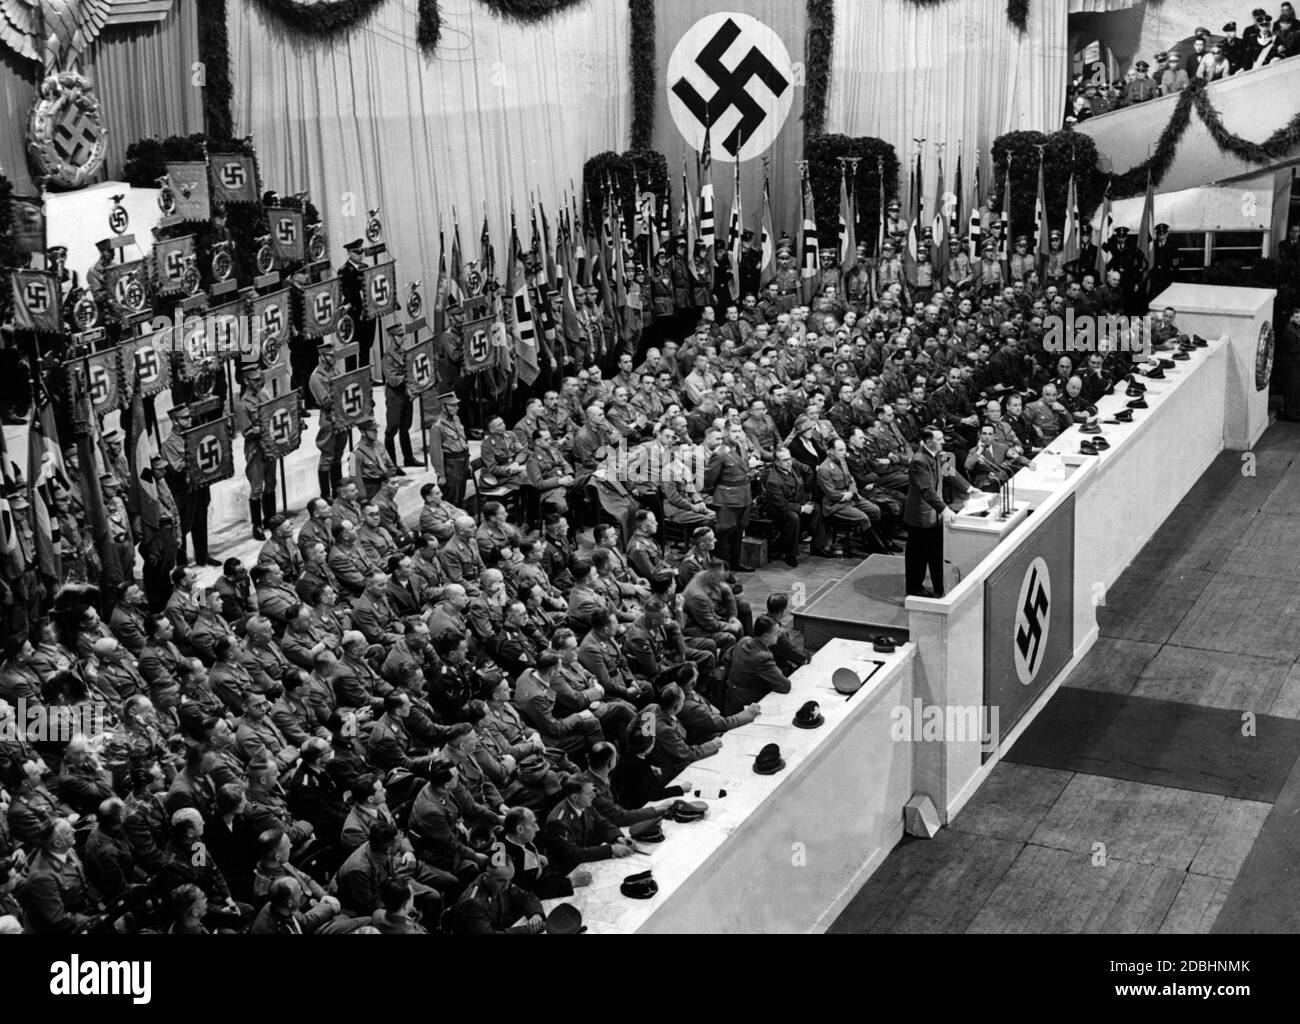 Adolf Hitler bei einer Rede anlässlich der bevorstehenden Spendenaktion für das Kriegswinterhilfswerk im Winter 41/42. Seit Kriegsbeginn trägt Hitler keine Parteiuniform mehr, sondern eine feldgraue Jacke. Auf dem Bild sind alle möglichen Parteimitglieder der NSDAP zu sehen. Rechts von Hitler sind Julius Schaub, Joseph Goebbels, Robert Ley, Fritz Todt, Martin Bormann, Reinhard Heydrich und Albert Speer deutlich zu erkennen. Auf Hitlers linker Seite, mit dem Rücken zum Fotografen, sind wahrscheinlich Rudolf Hess, Heinrich Himmler und Joachim von Ribbentropp. Die Dame mit dem Haarkranz Stockfoto